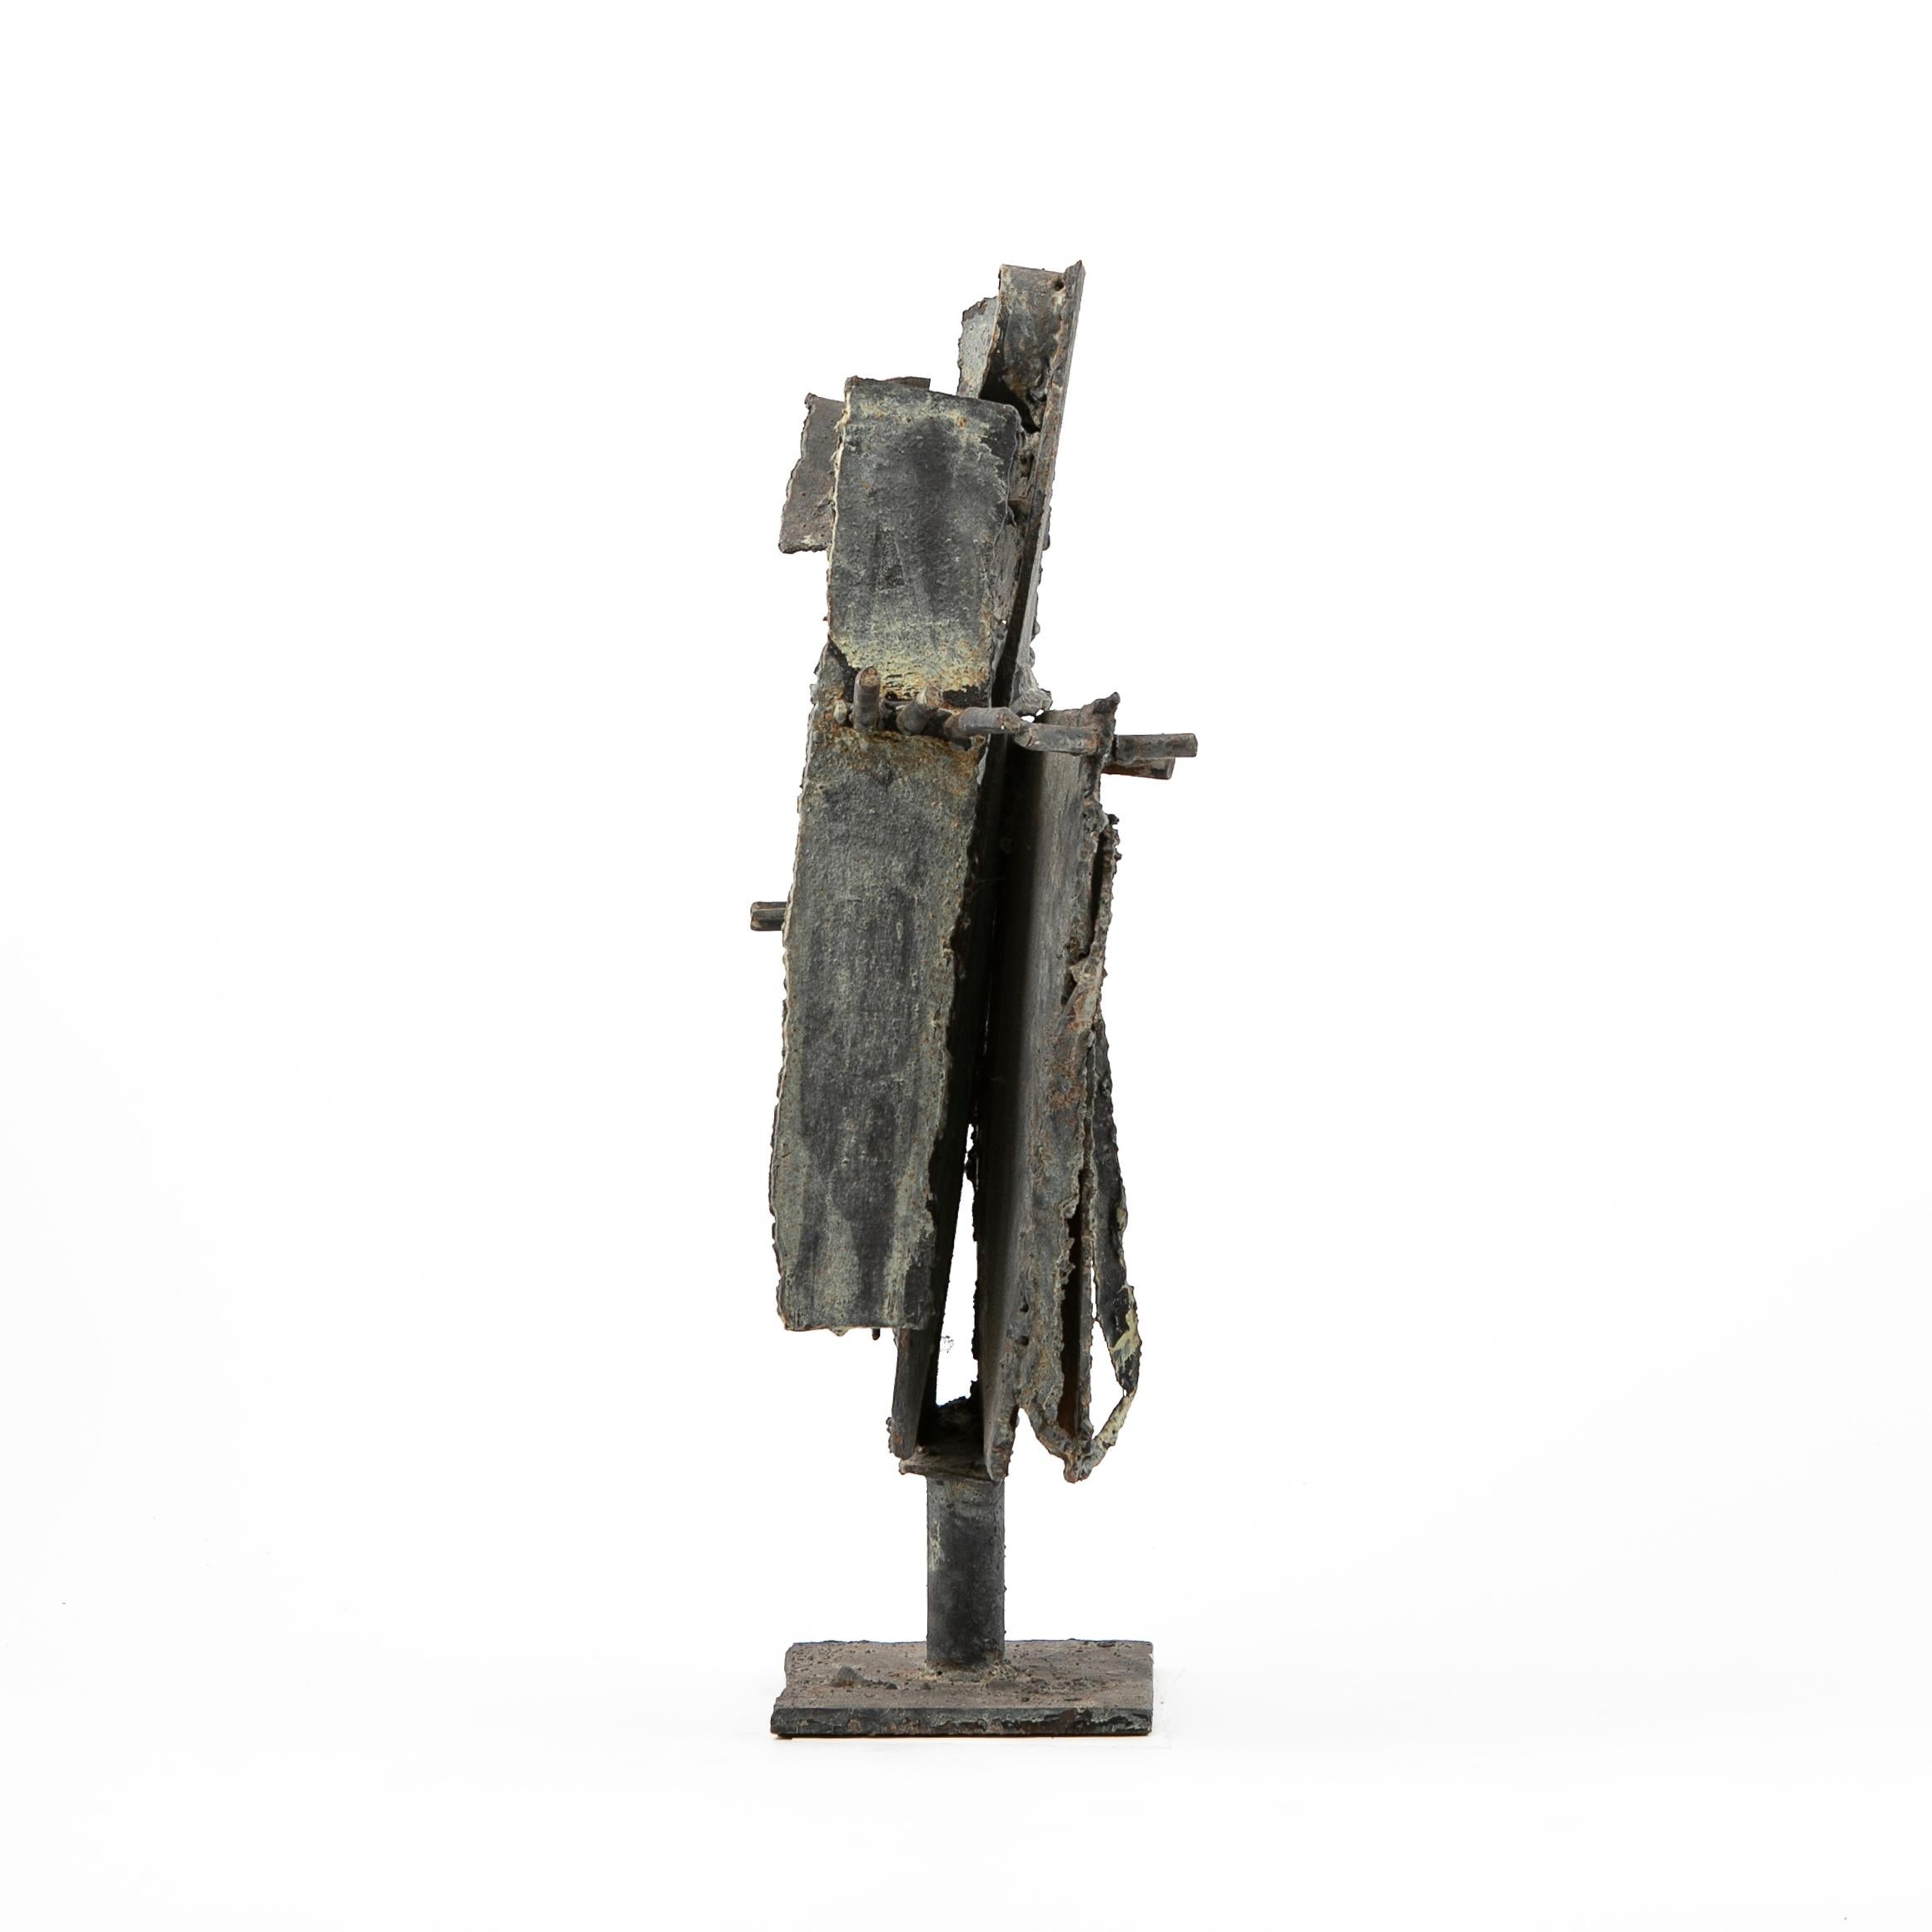 Flemming Rodian Greve (1944-2014).
Eine abstrakte Skulptur aus patiniertem Eisen.
Hergestellt in Dänemark in den 1960er Jahren.
Nicht signiert.


Flemming Rodian war ein renommierter dänischer Künstler der Nachkriegszeit und der Gegenwart, der